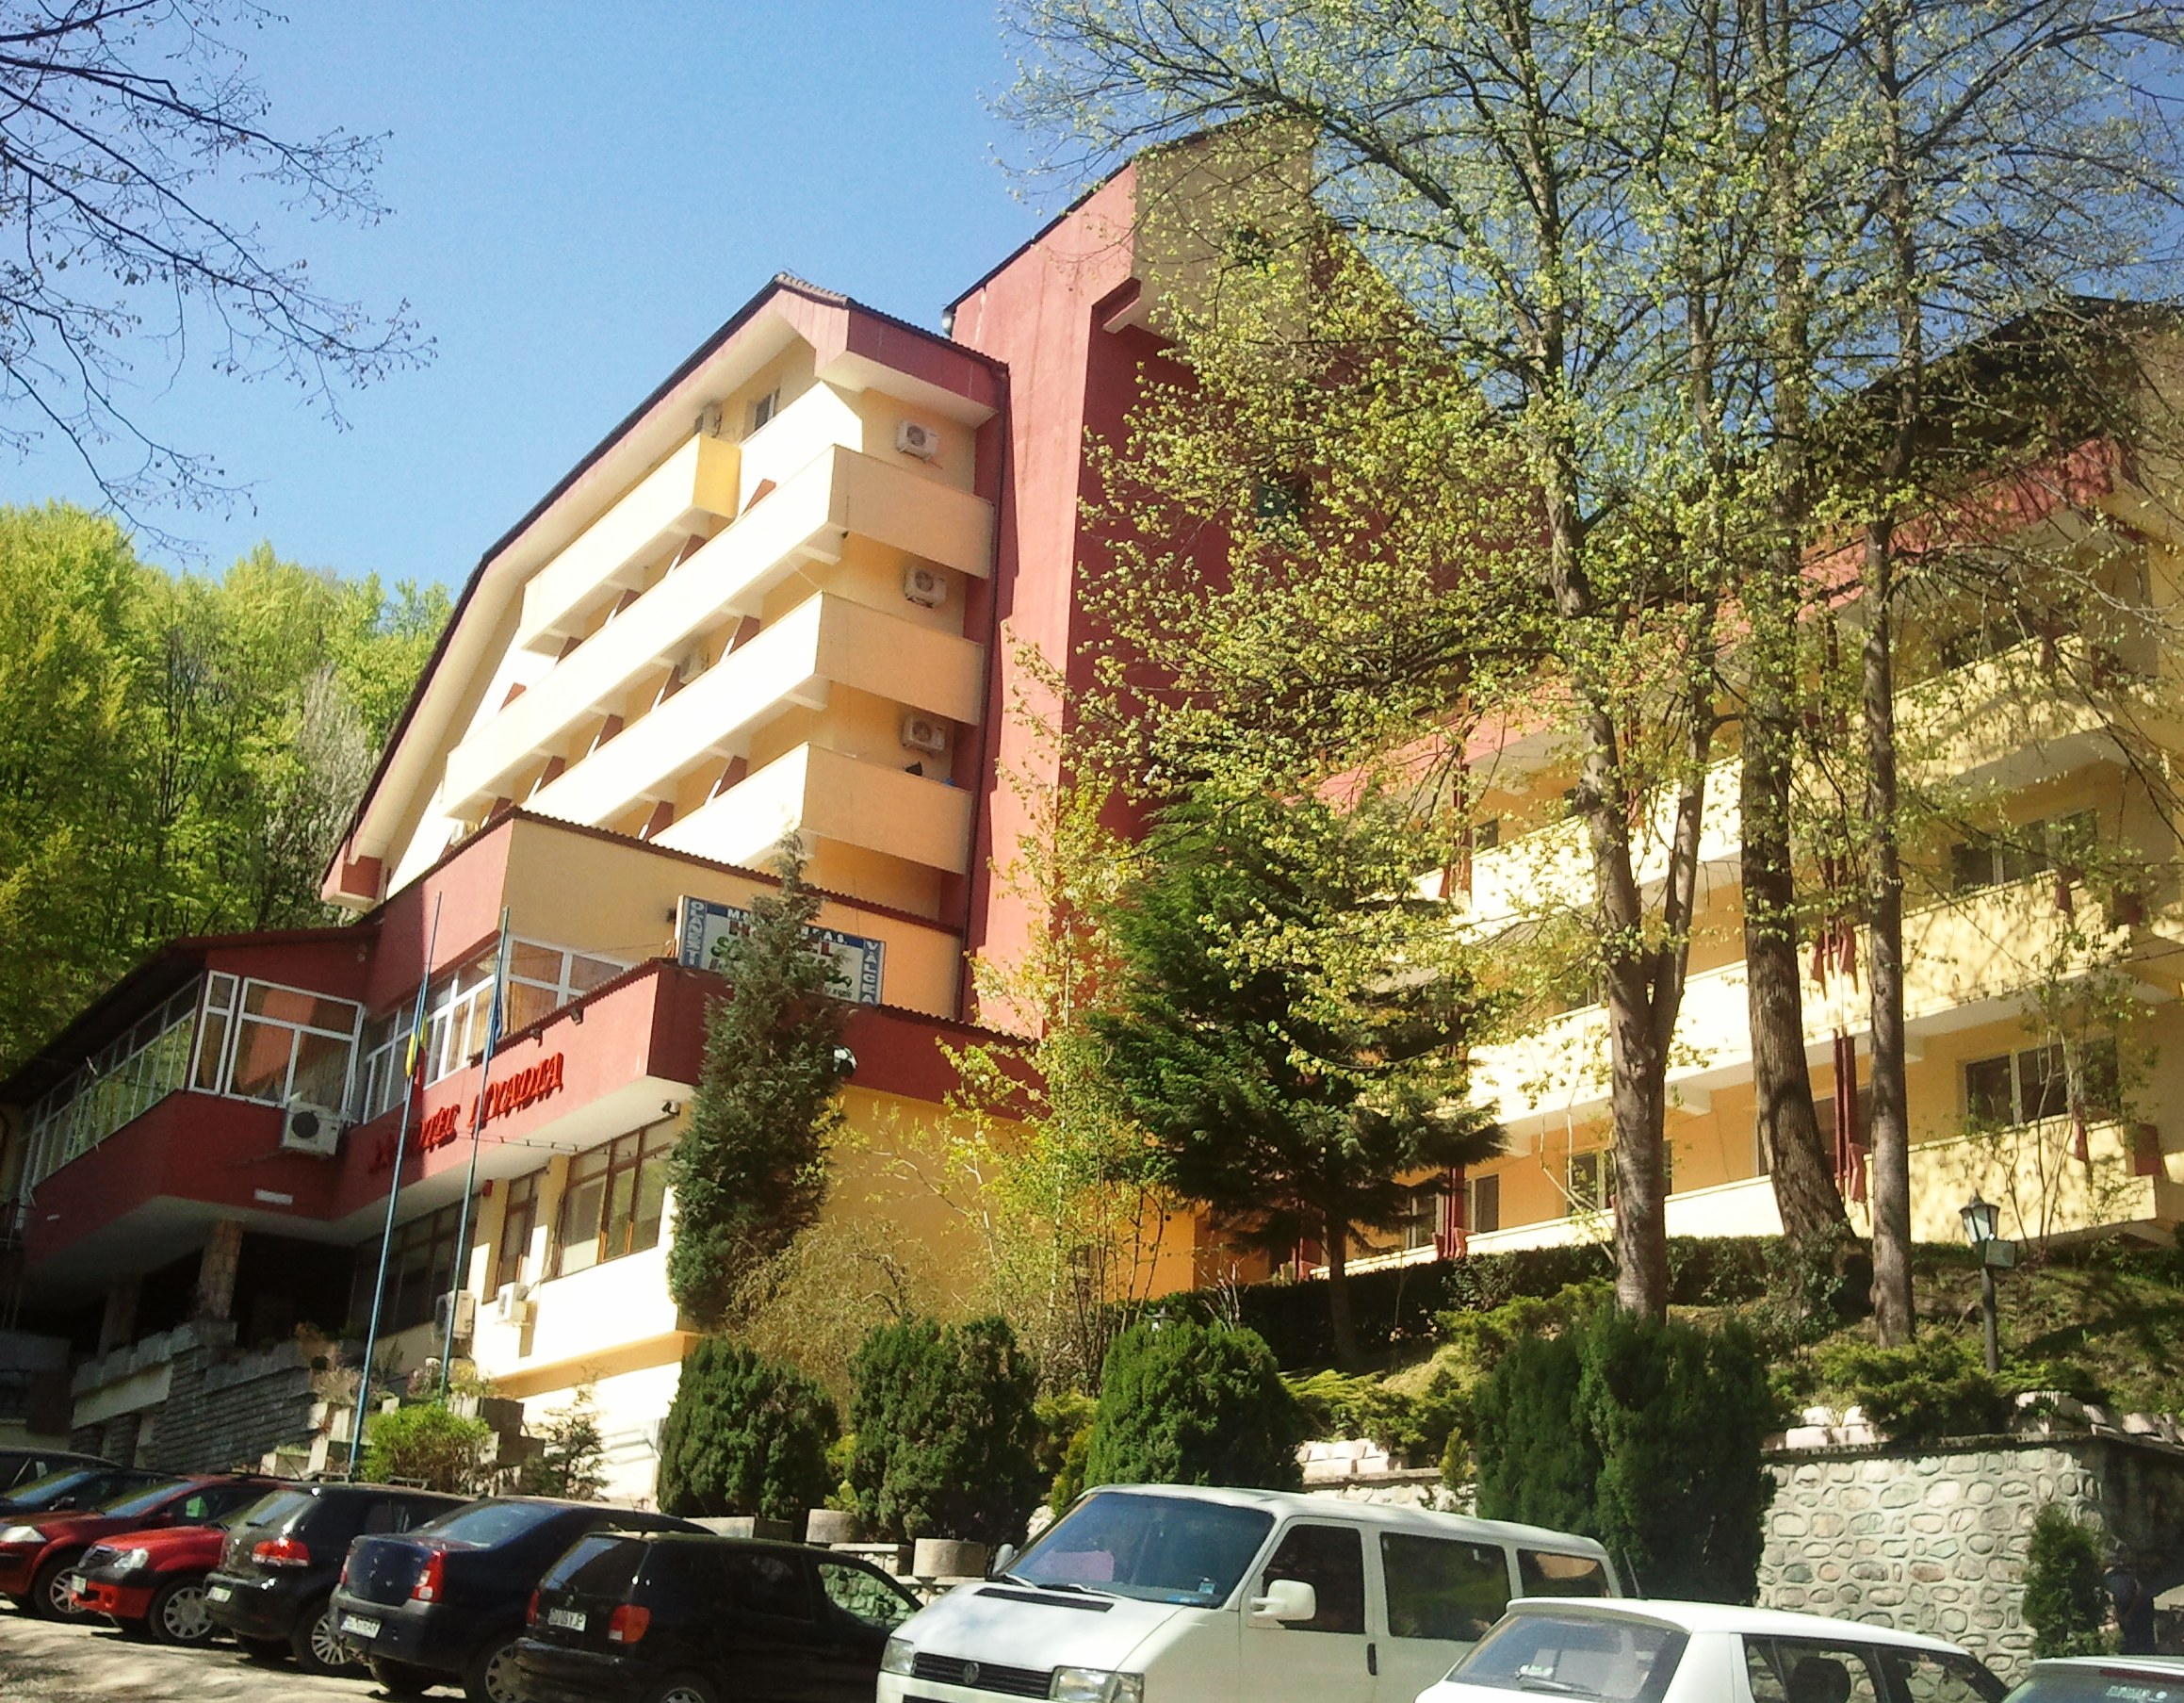 Hotel Livadia